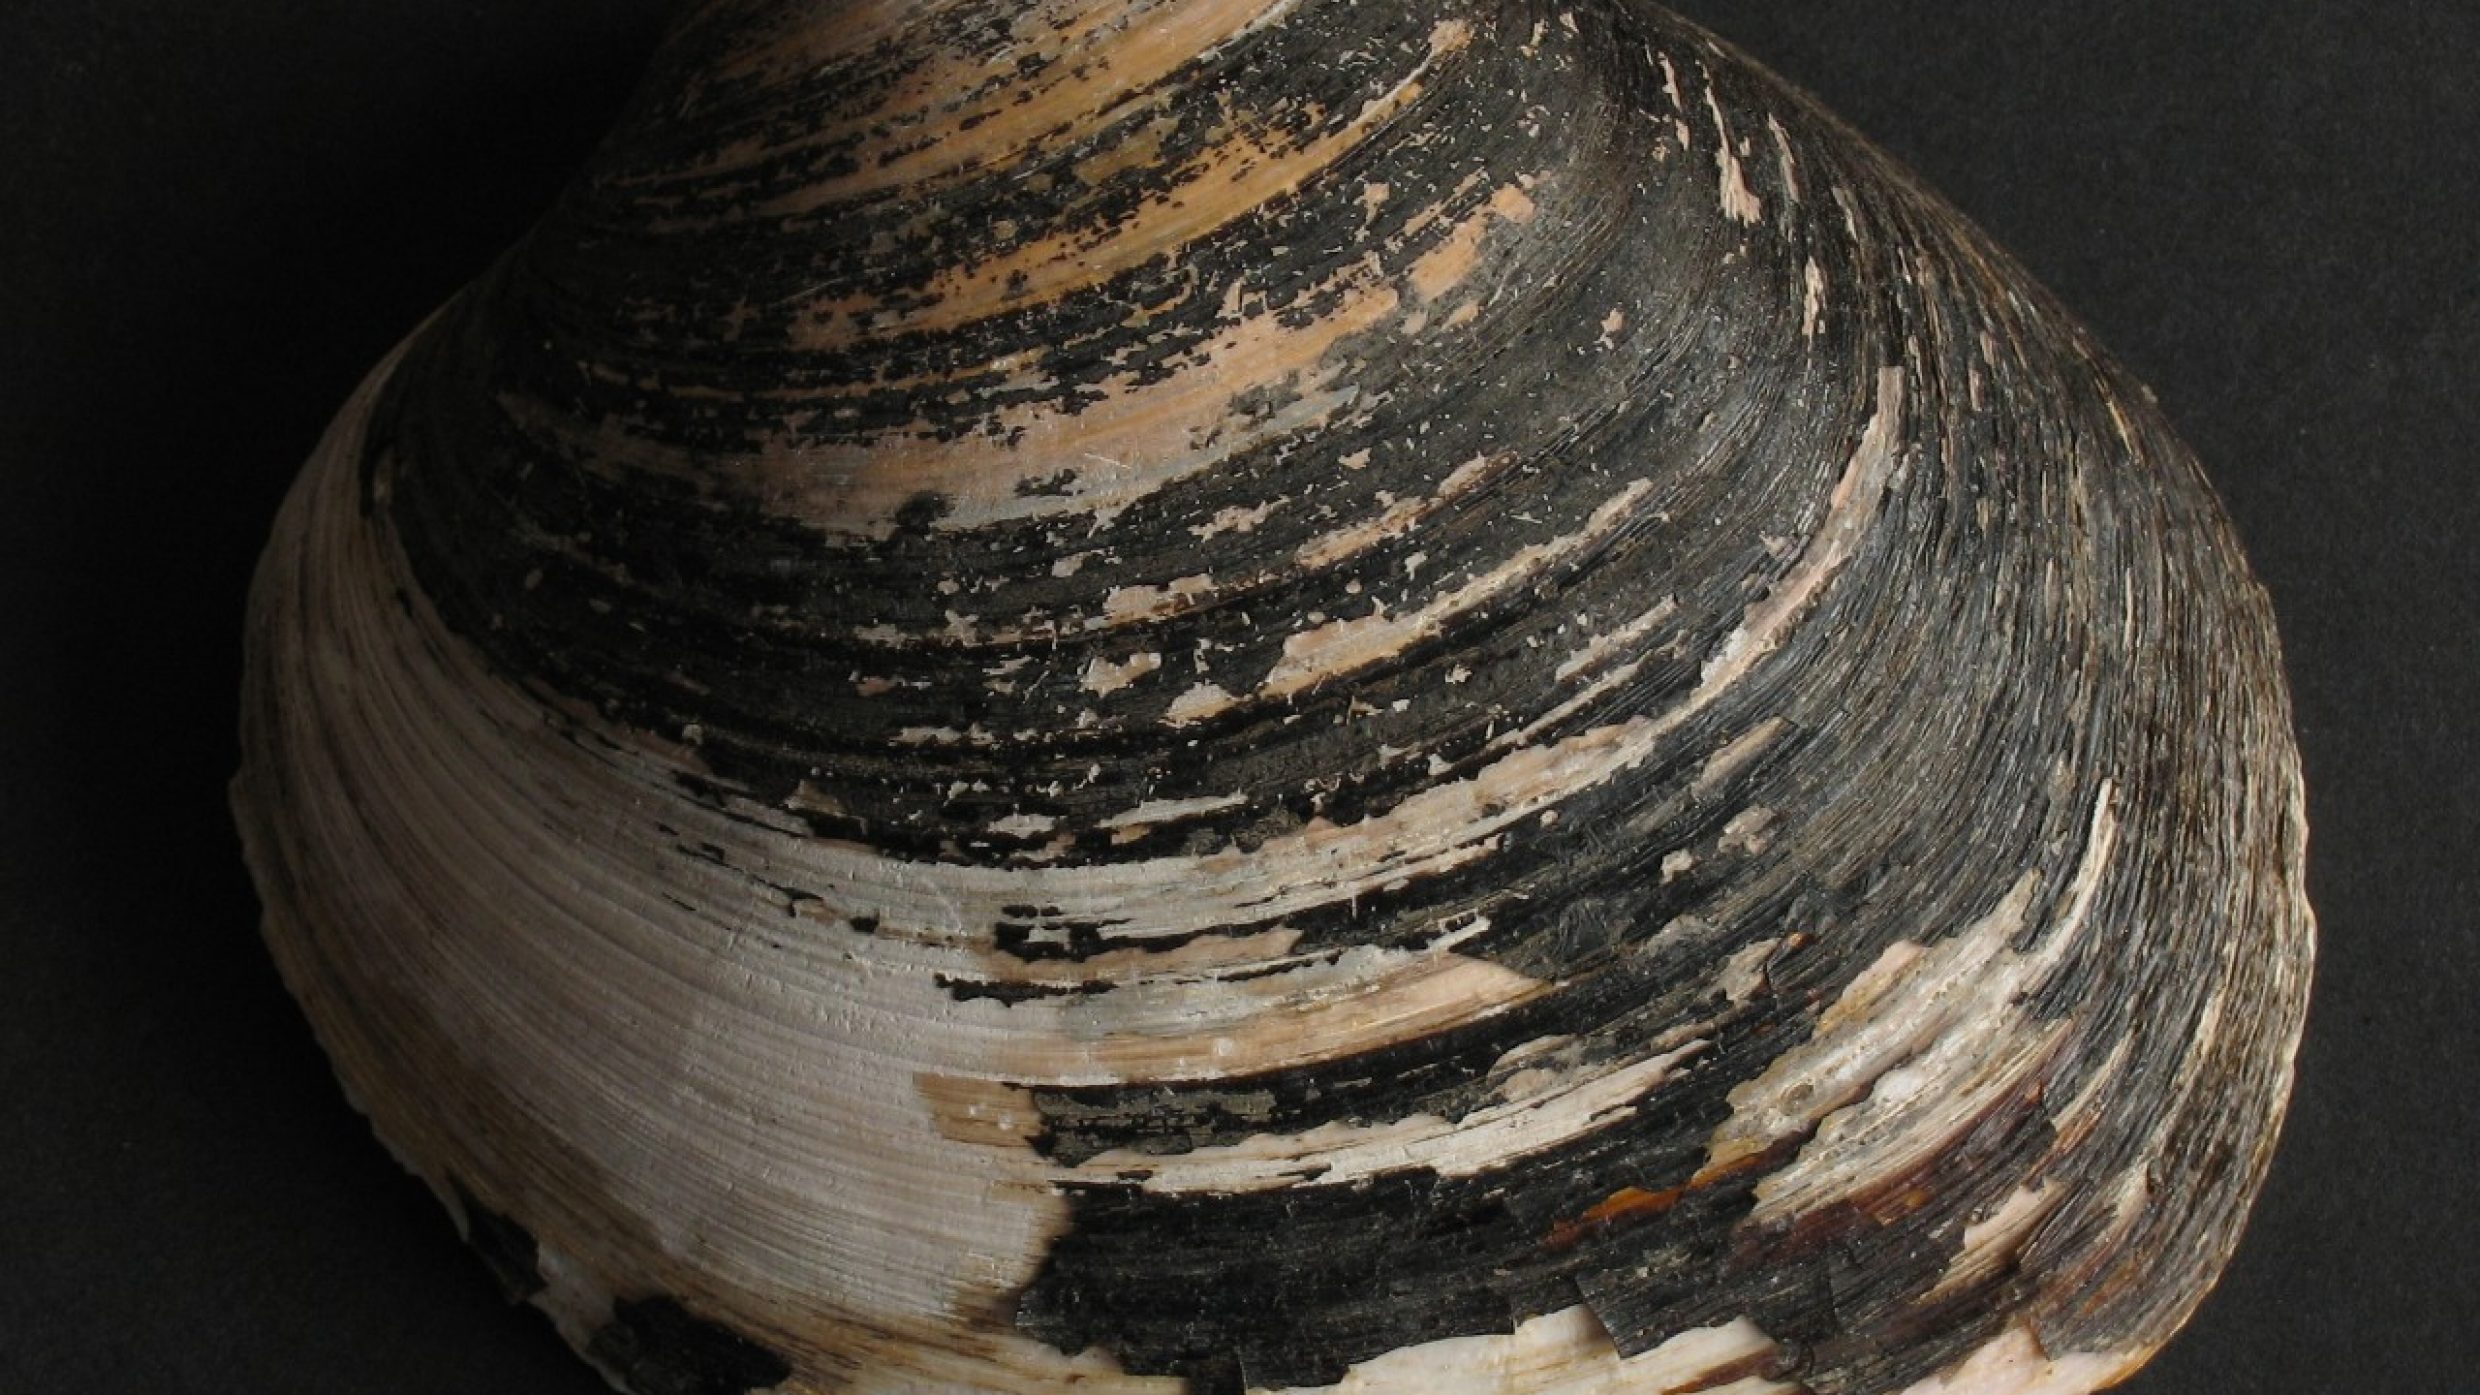 Le spécimen le plus ancien connu de cette espèce a atteint 507 ans, un âge qui a pu être déterminé à partir du nombre de stries de croissance sur sa coquille. Ce mollusque vit enfoui dans la vase du fond de l’Atlantique, de la mer Baltique et de la mer du Nord, jusqu’à une centaine de mètres de profondeur. 